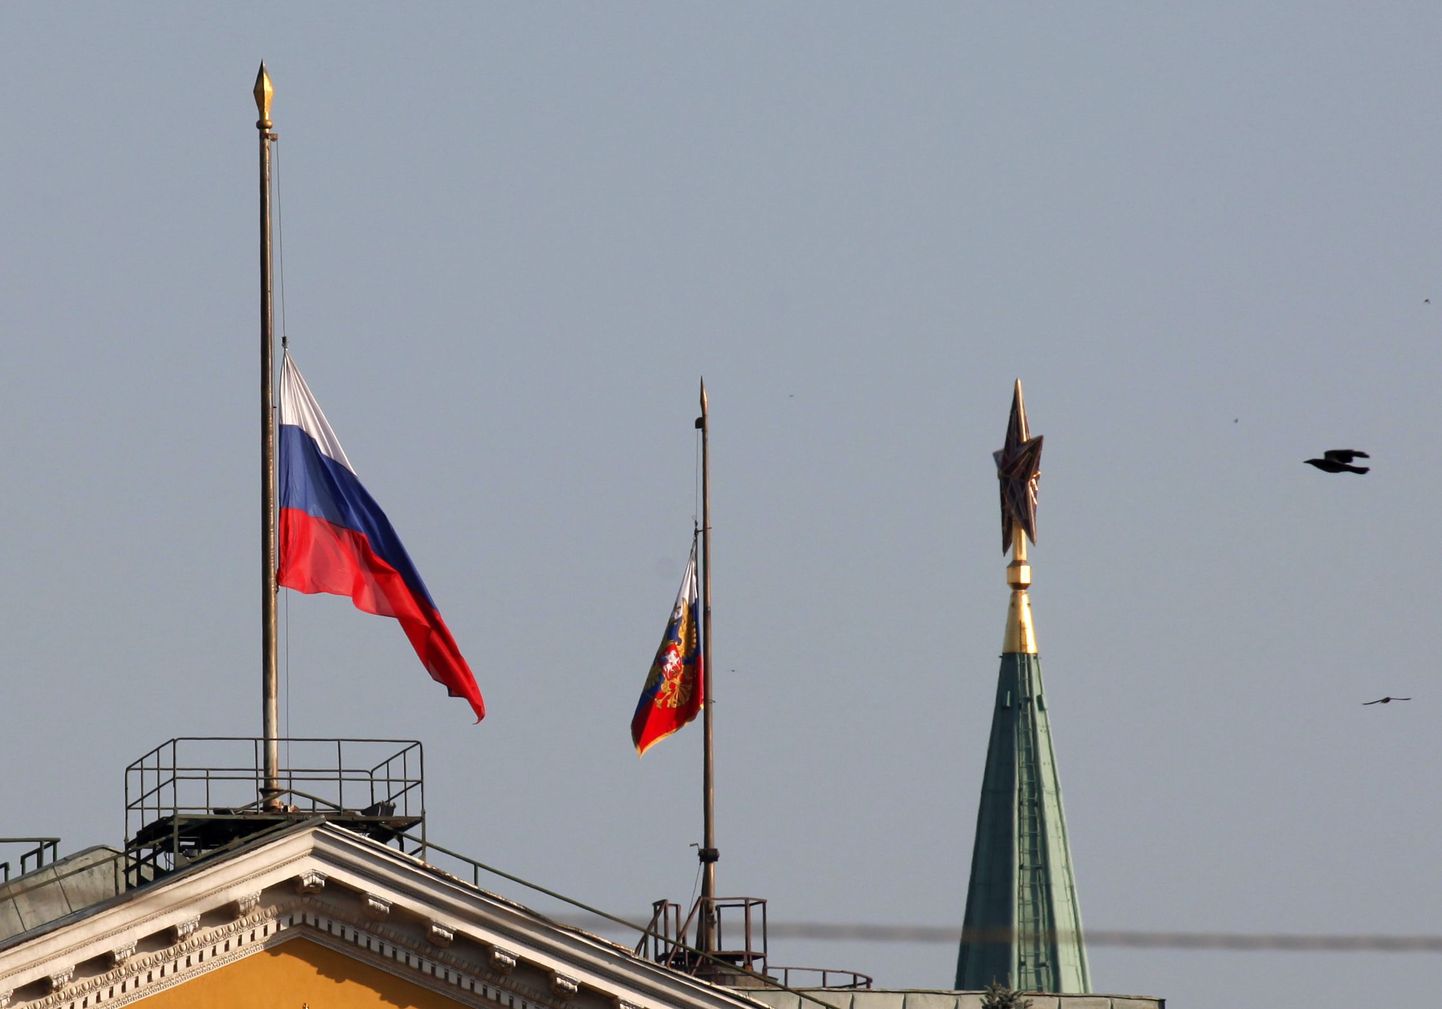 Venemaal on laevaõnnetuse ohvrite mälestamiseks kuulutatud täna välja üleriigiline leinapäev.